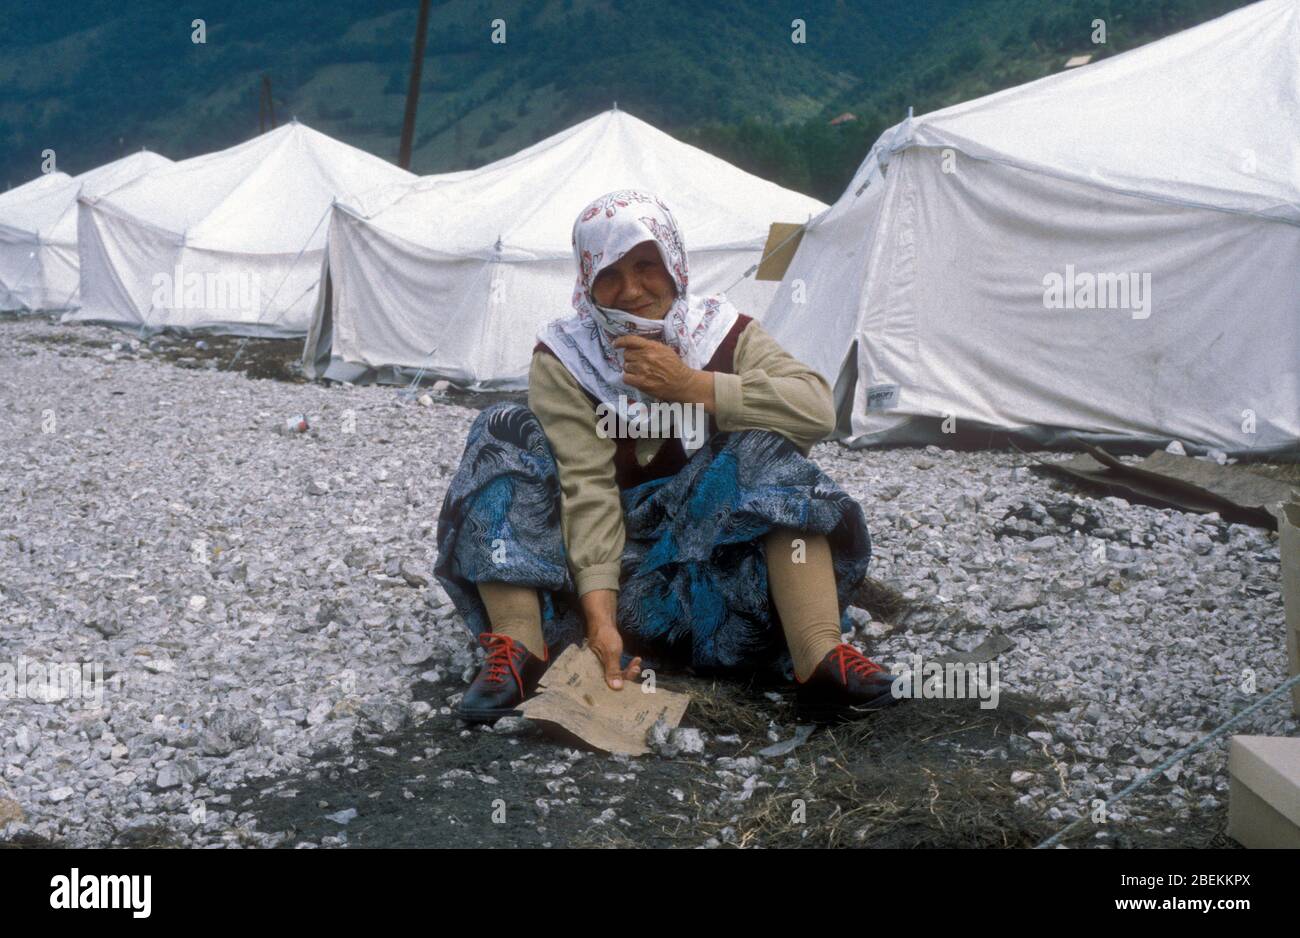 1995 Zenica, Bosnien - ältere Flüchtlingsfrau, die vor den Kämpfen in Zenica geflohen ist, findet Zuflucht in einem temporären Flüchtlingslager der Vereinten Nationen in der Nähe von Zenica Stockfoto